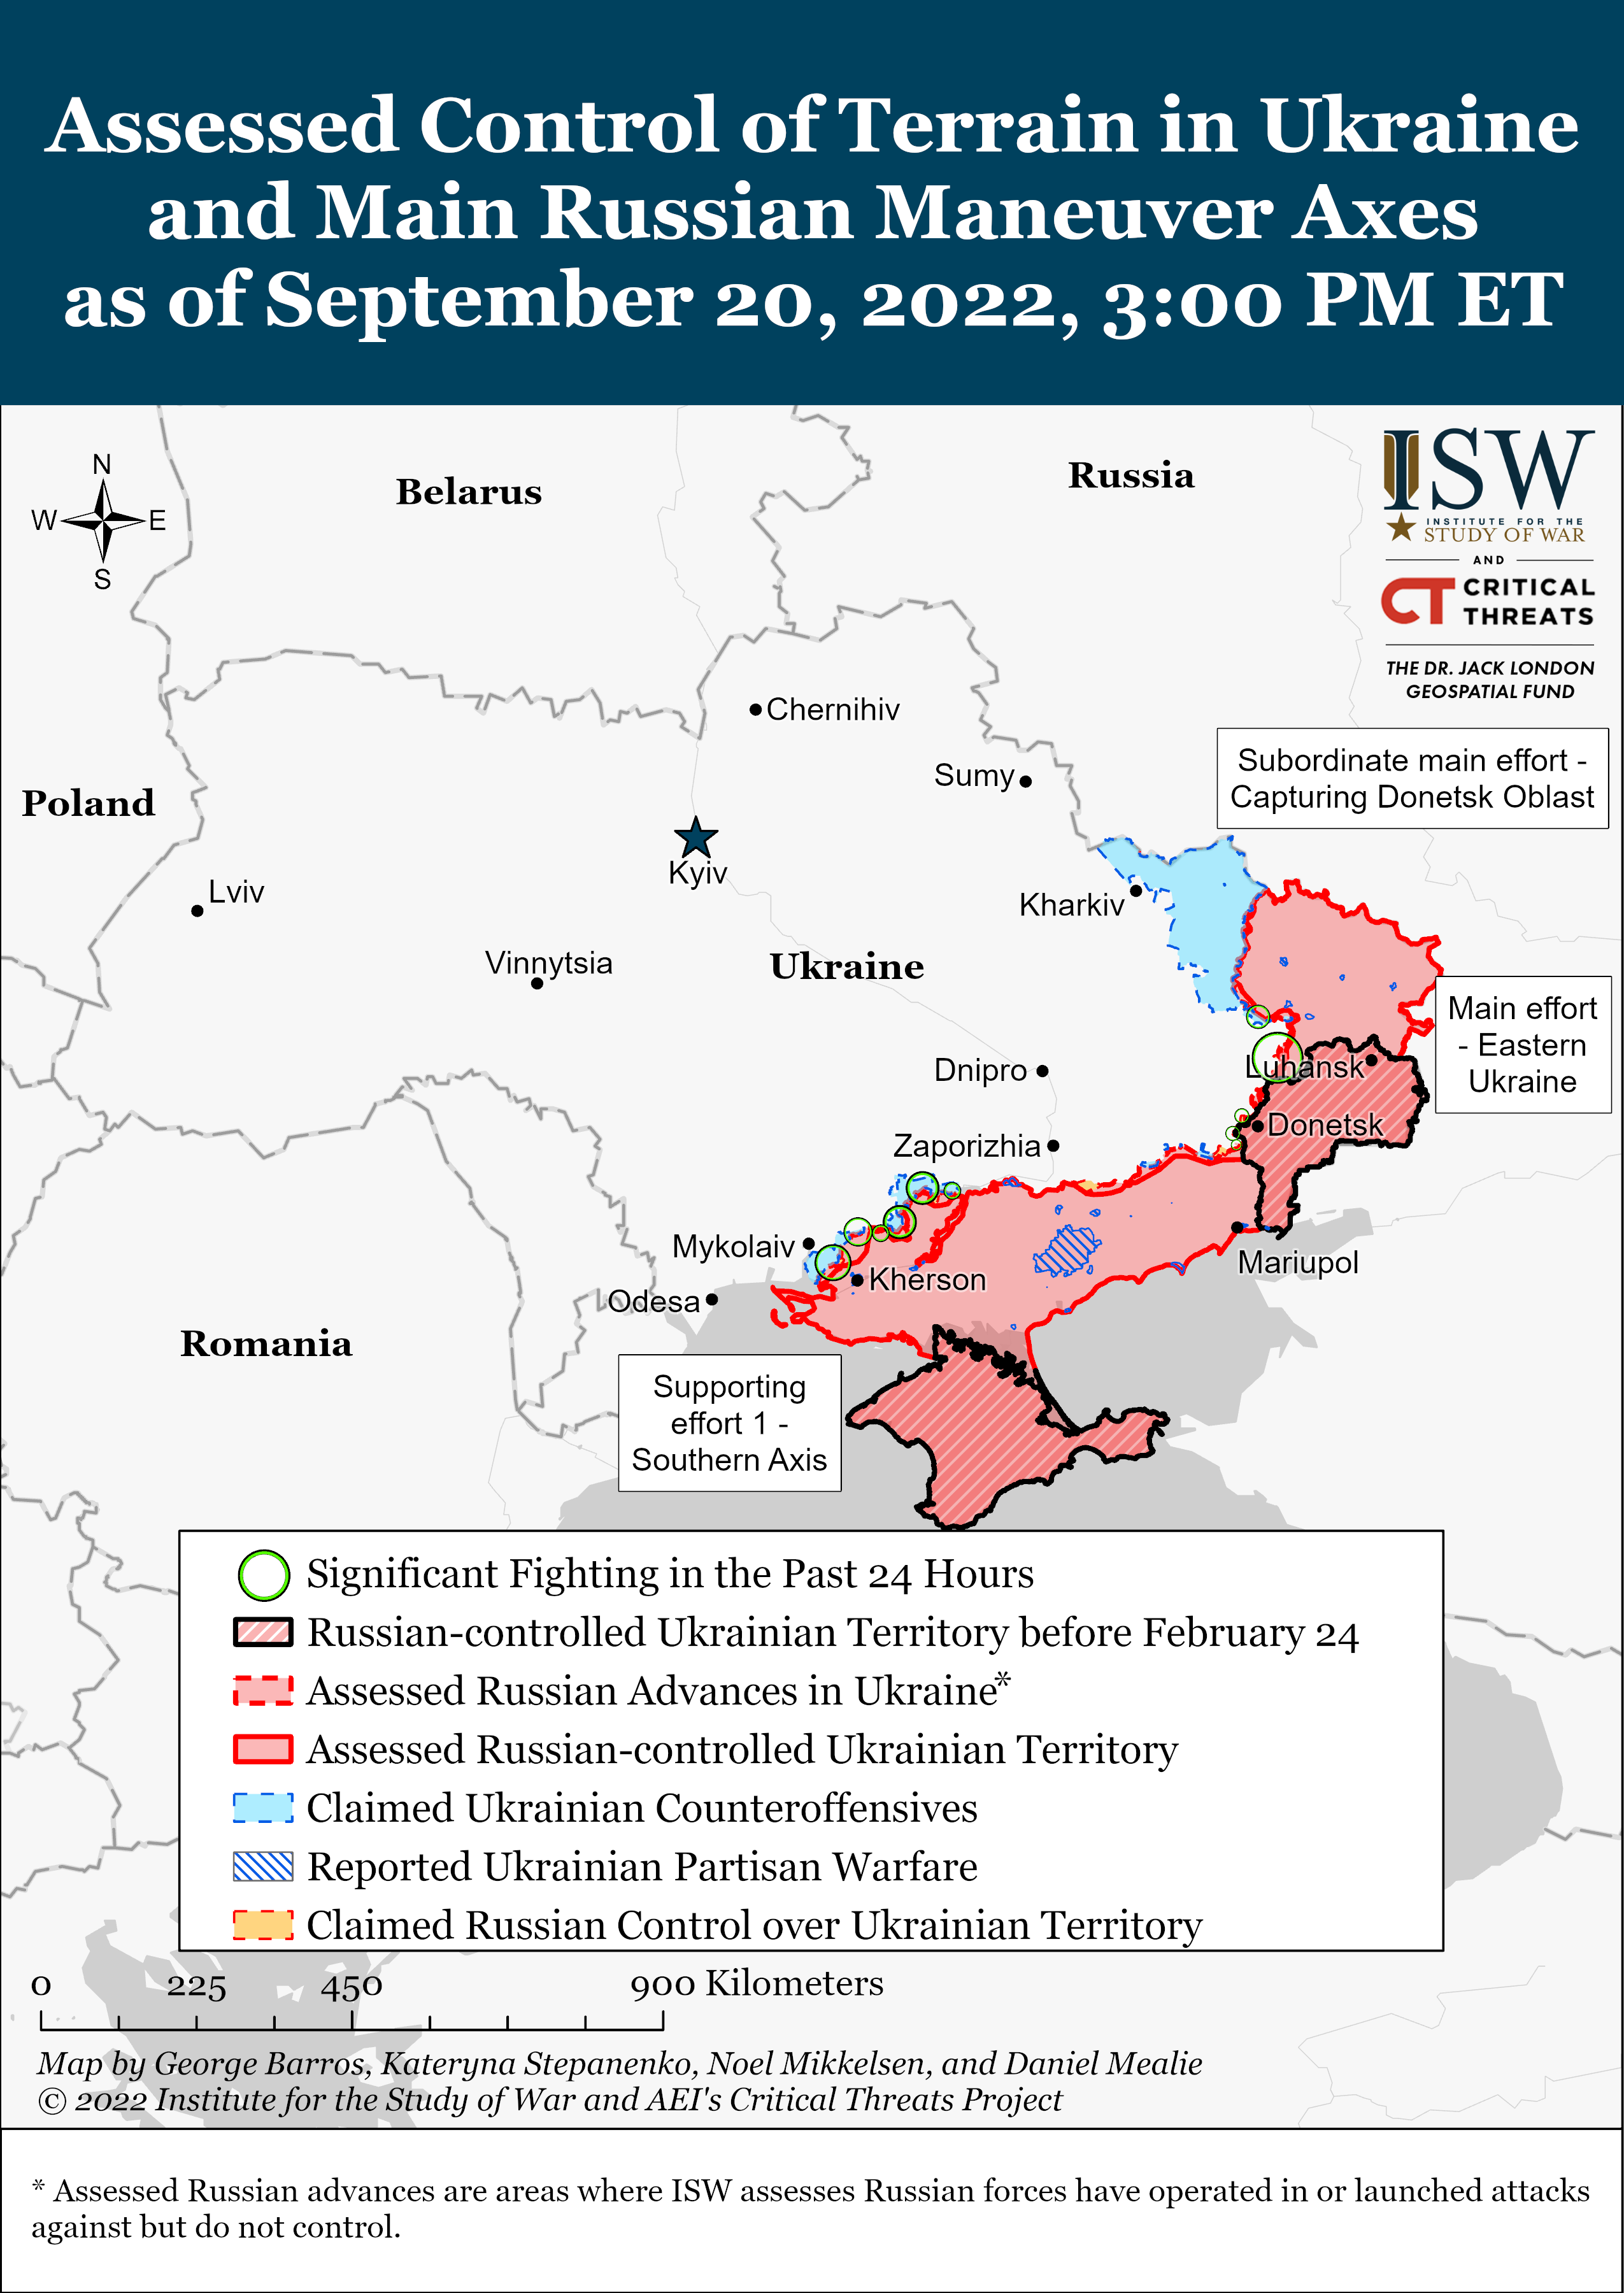 Wie ist der aktuelle Stand (20.09.22) der russischen Truppen in der Ukraine?